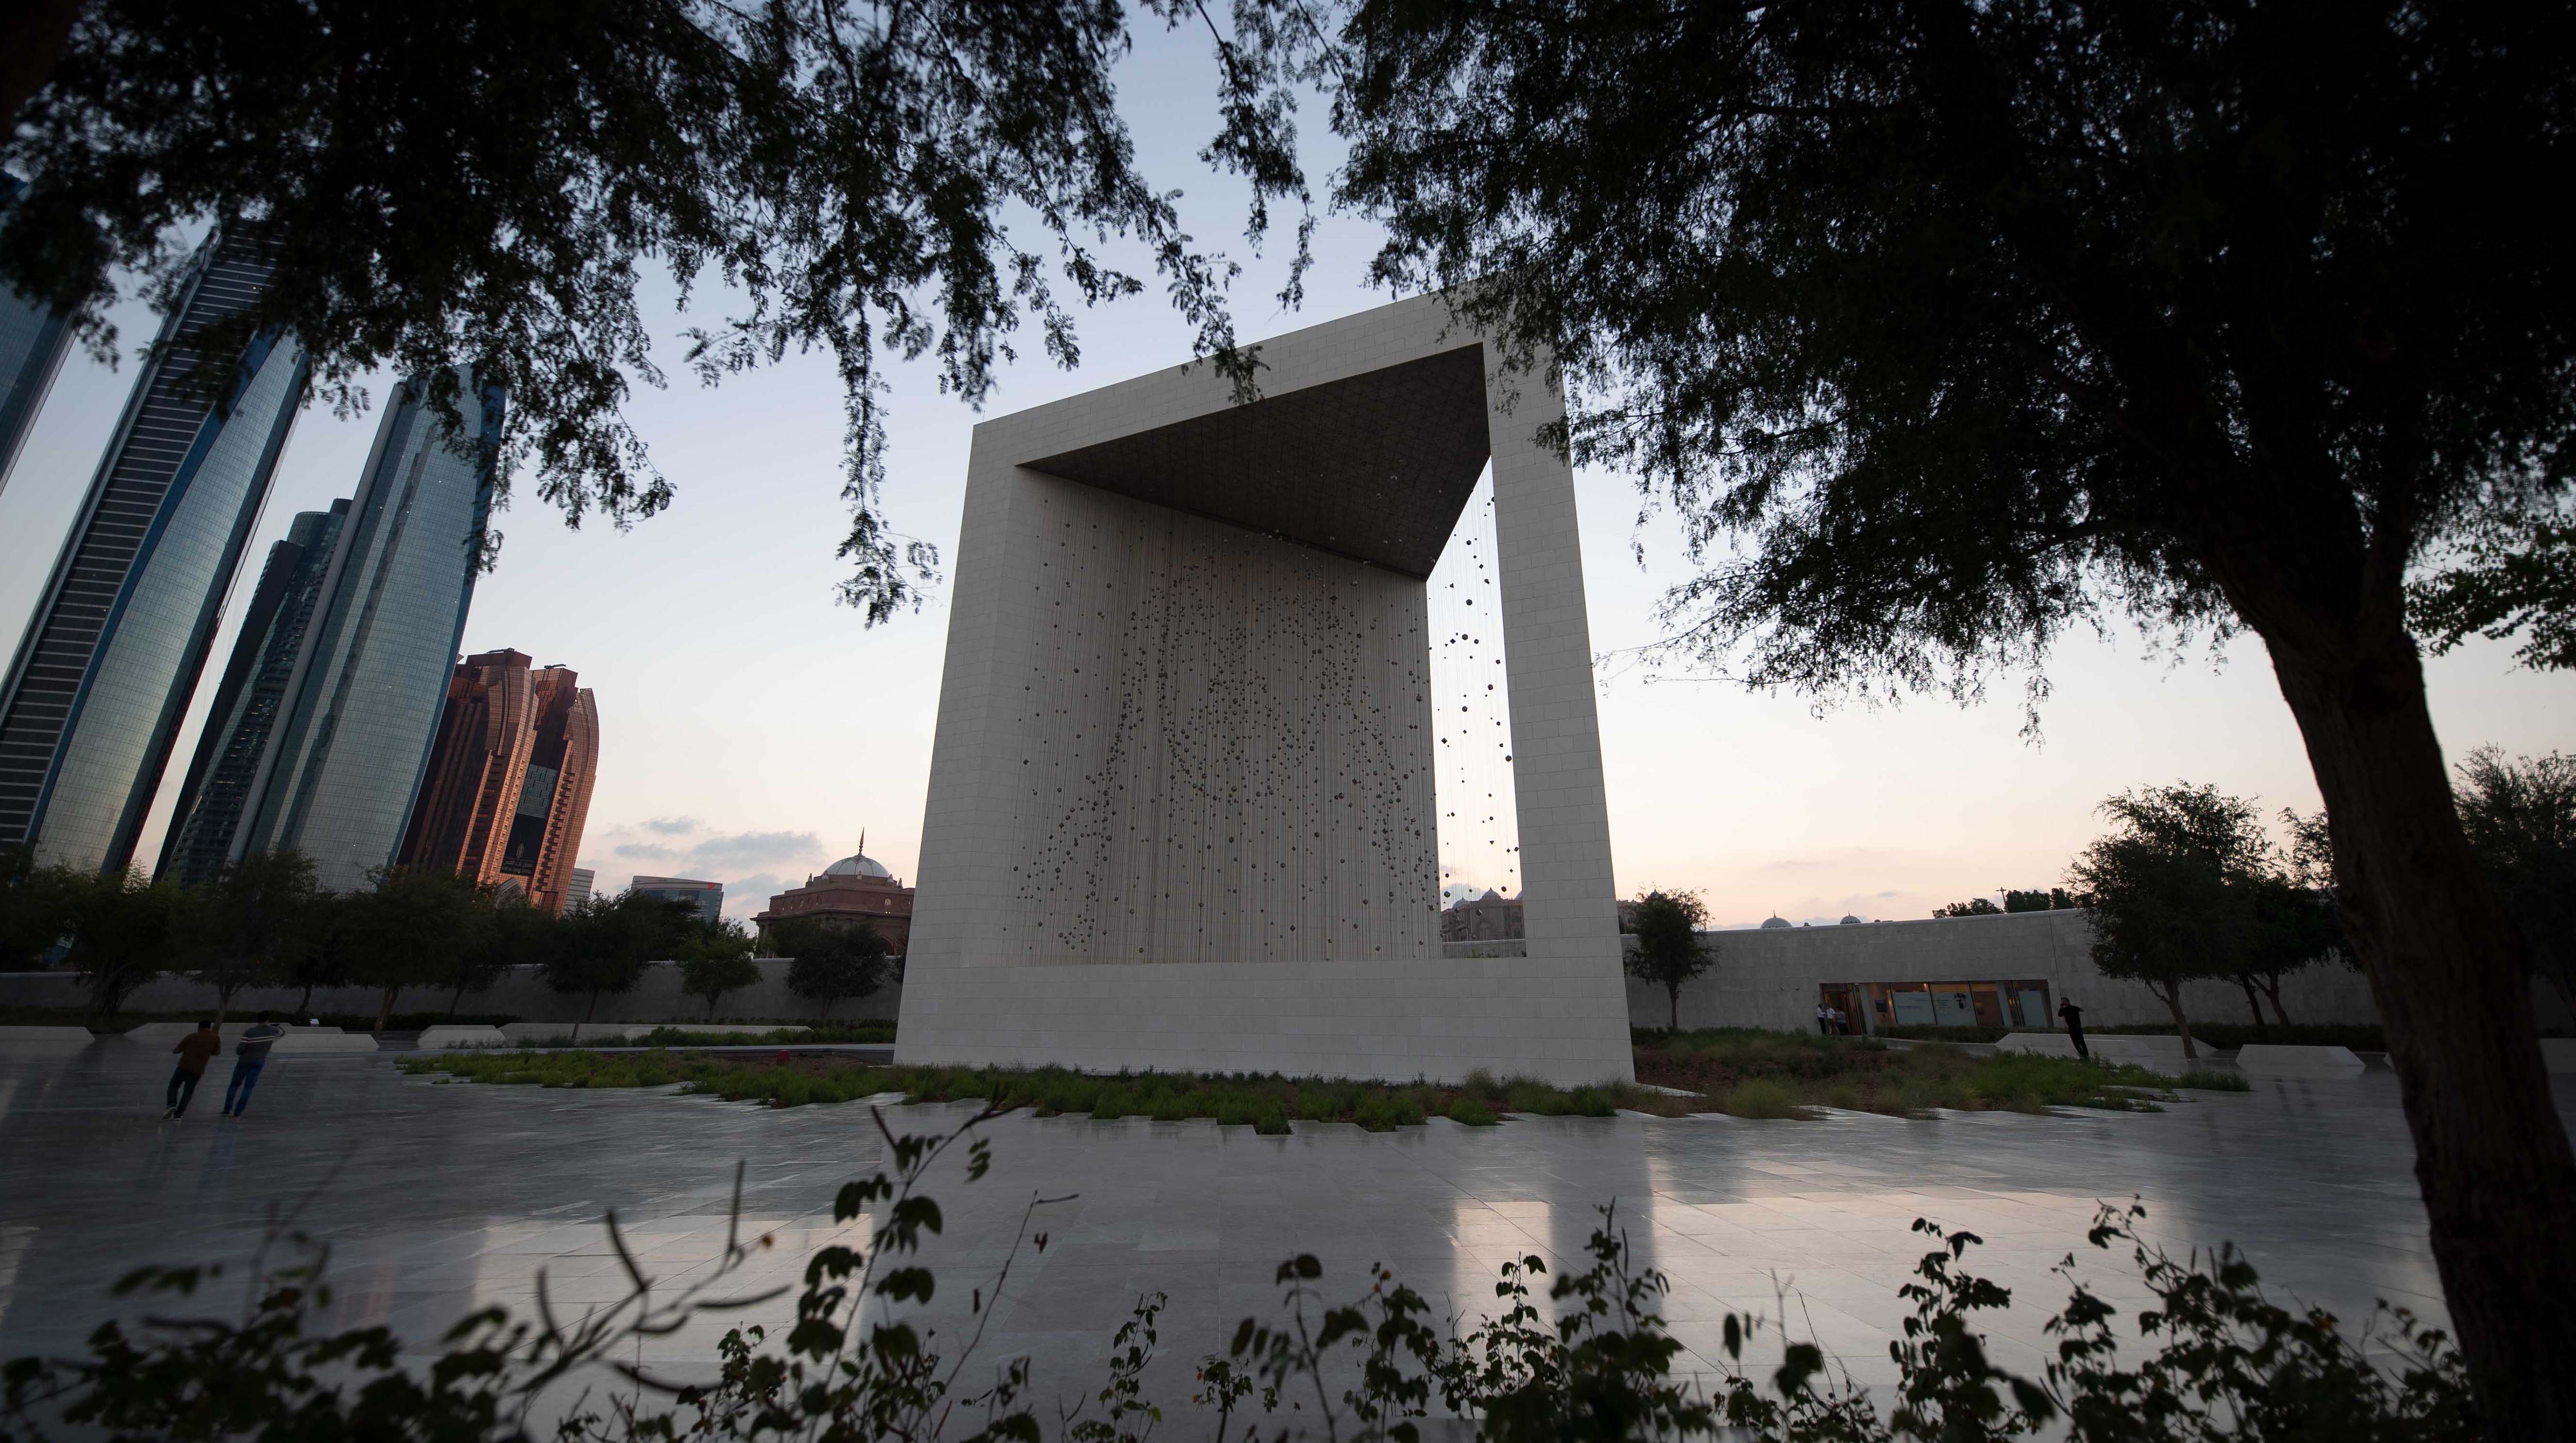 Vista al Memoriale del fondatore ad Abu Dhabi. Si vede i grattacieli allo sfondo.